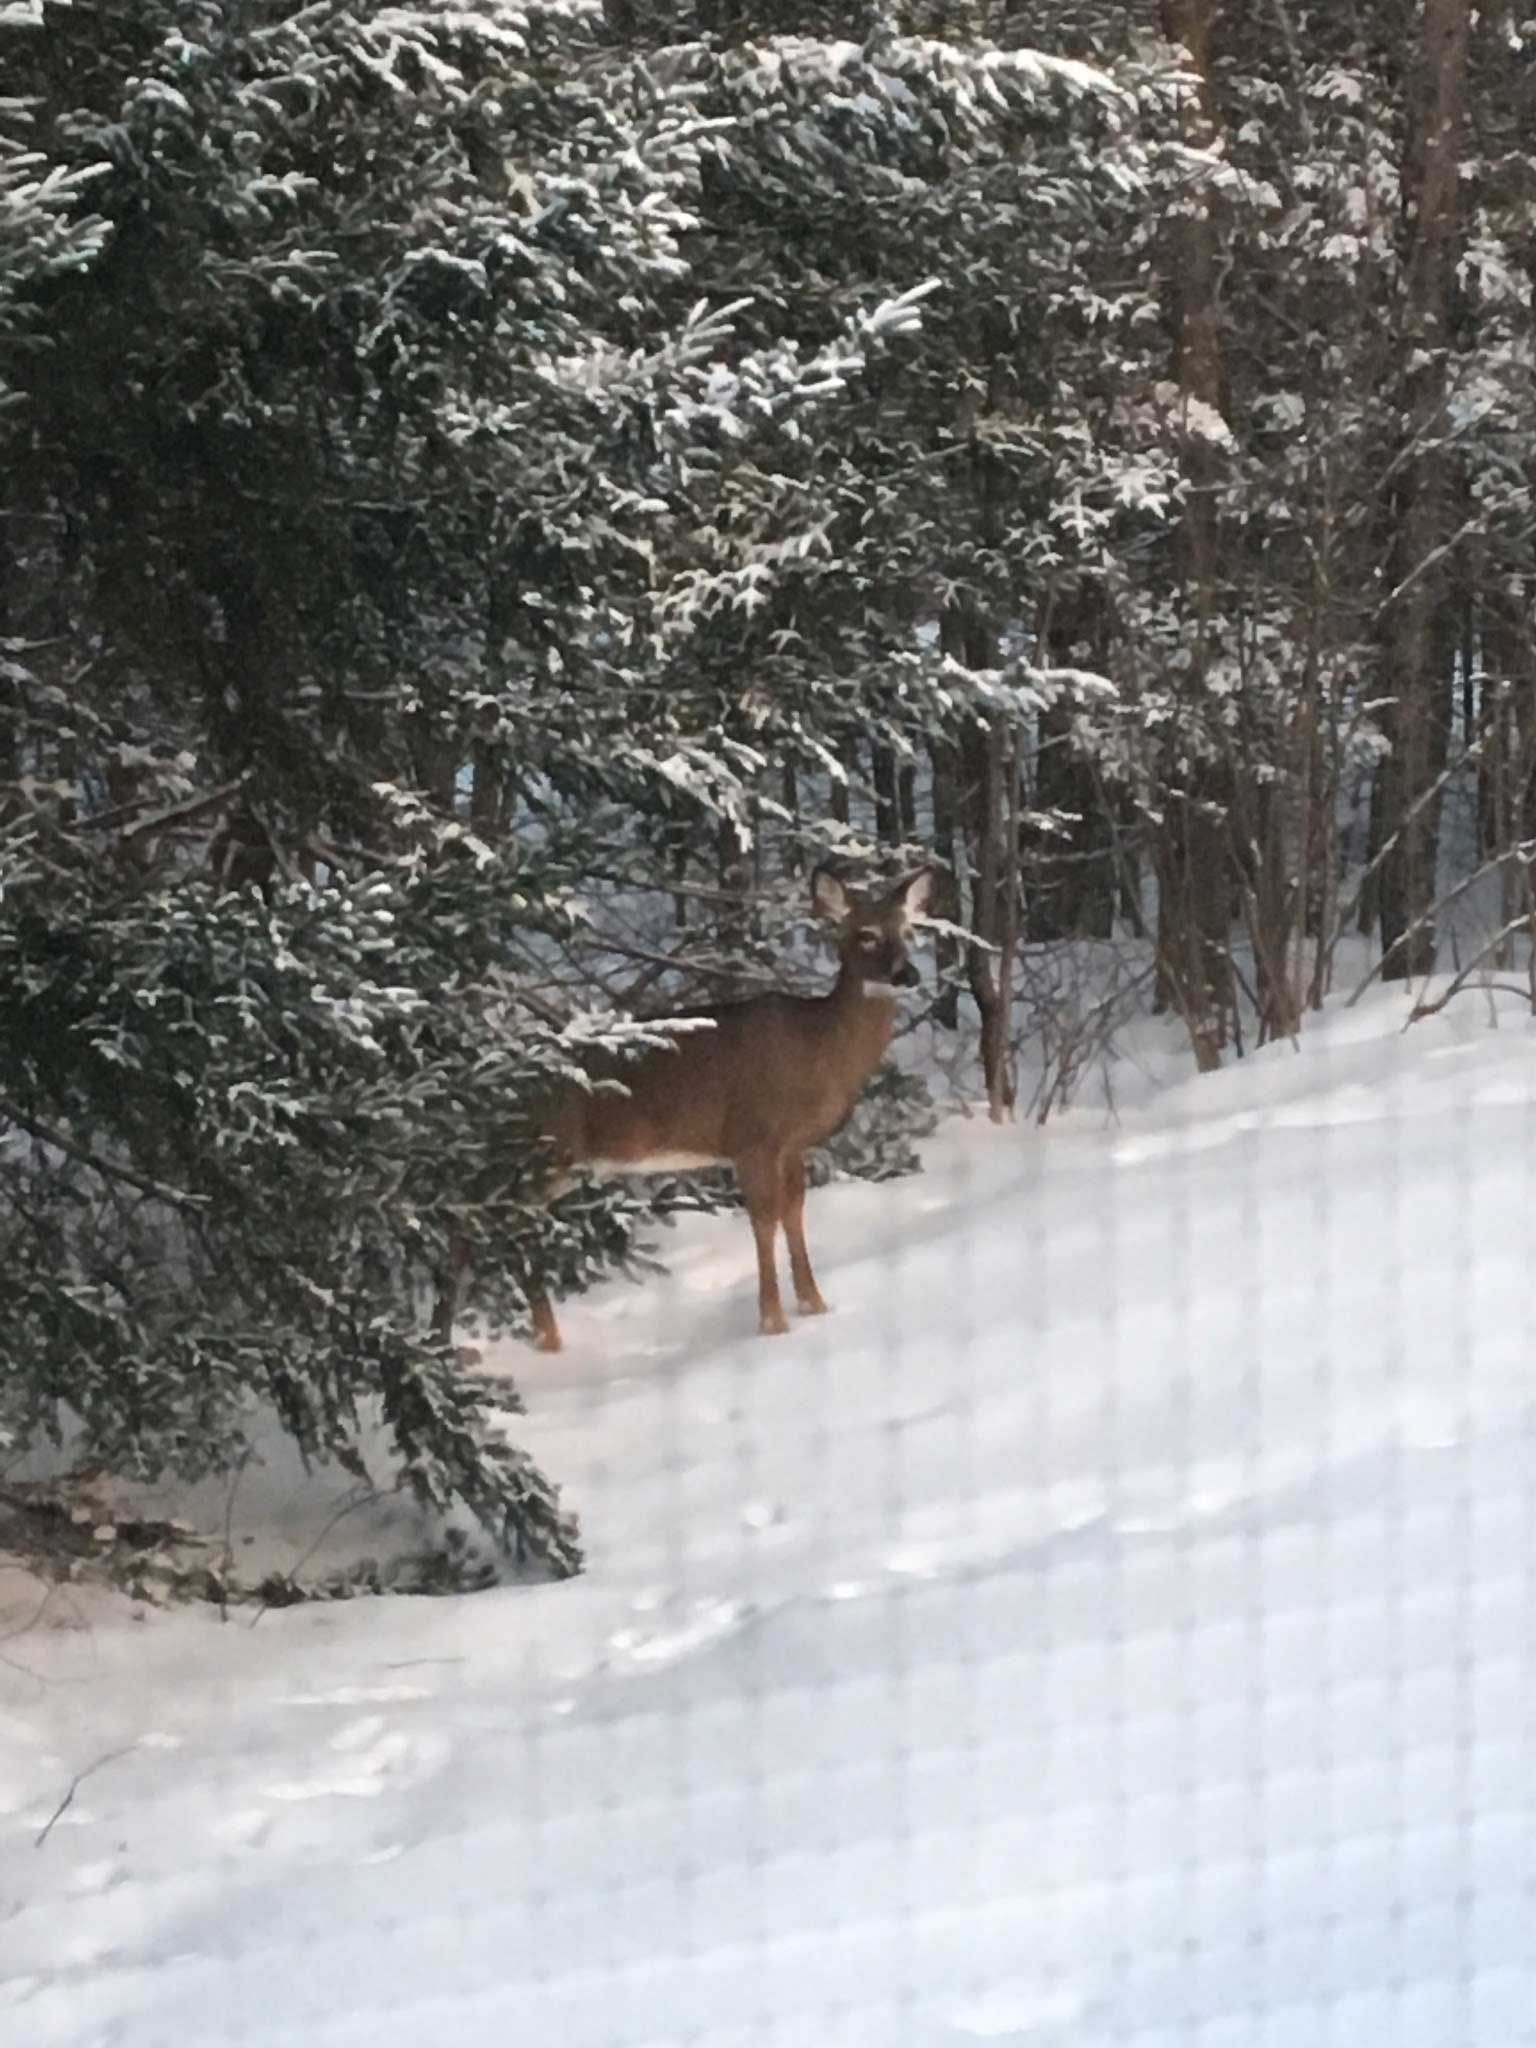 Stop feeding deer in Maine